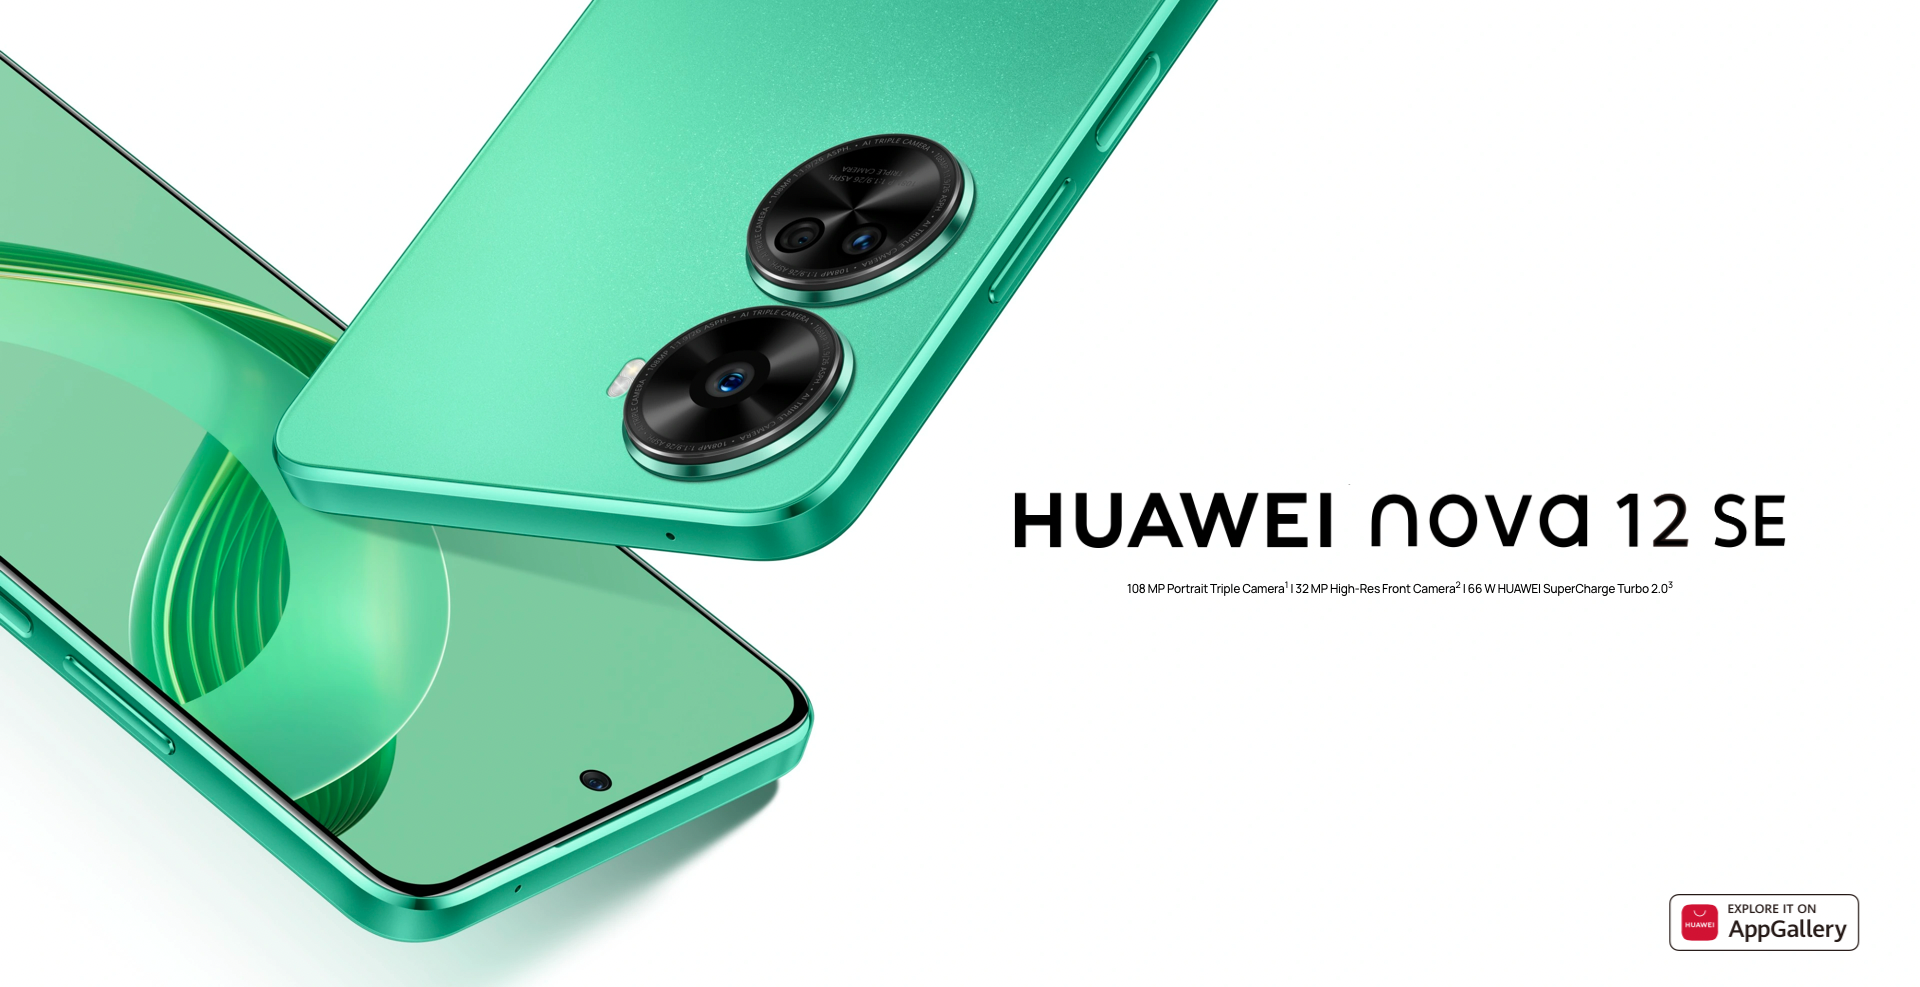 Huawei Nova 12 SE : écran OLED, puce Snapdragon 680, appareil photo de 108 MP et charge de 66 W